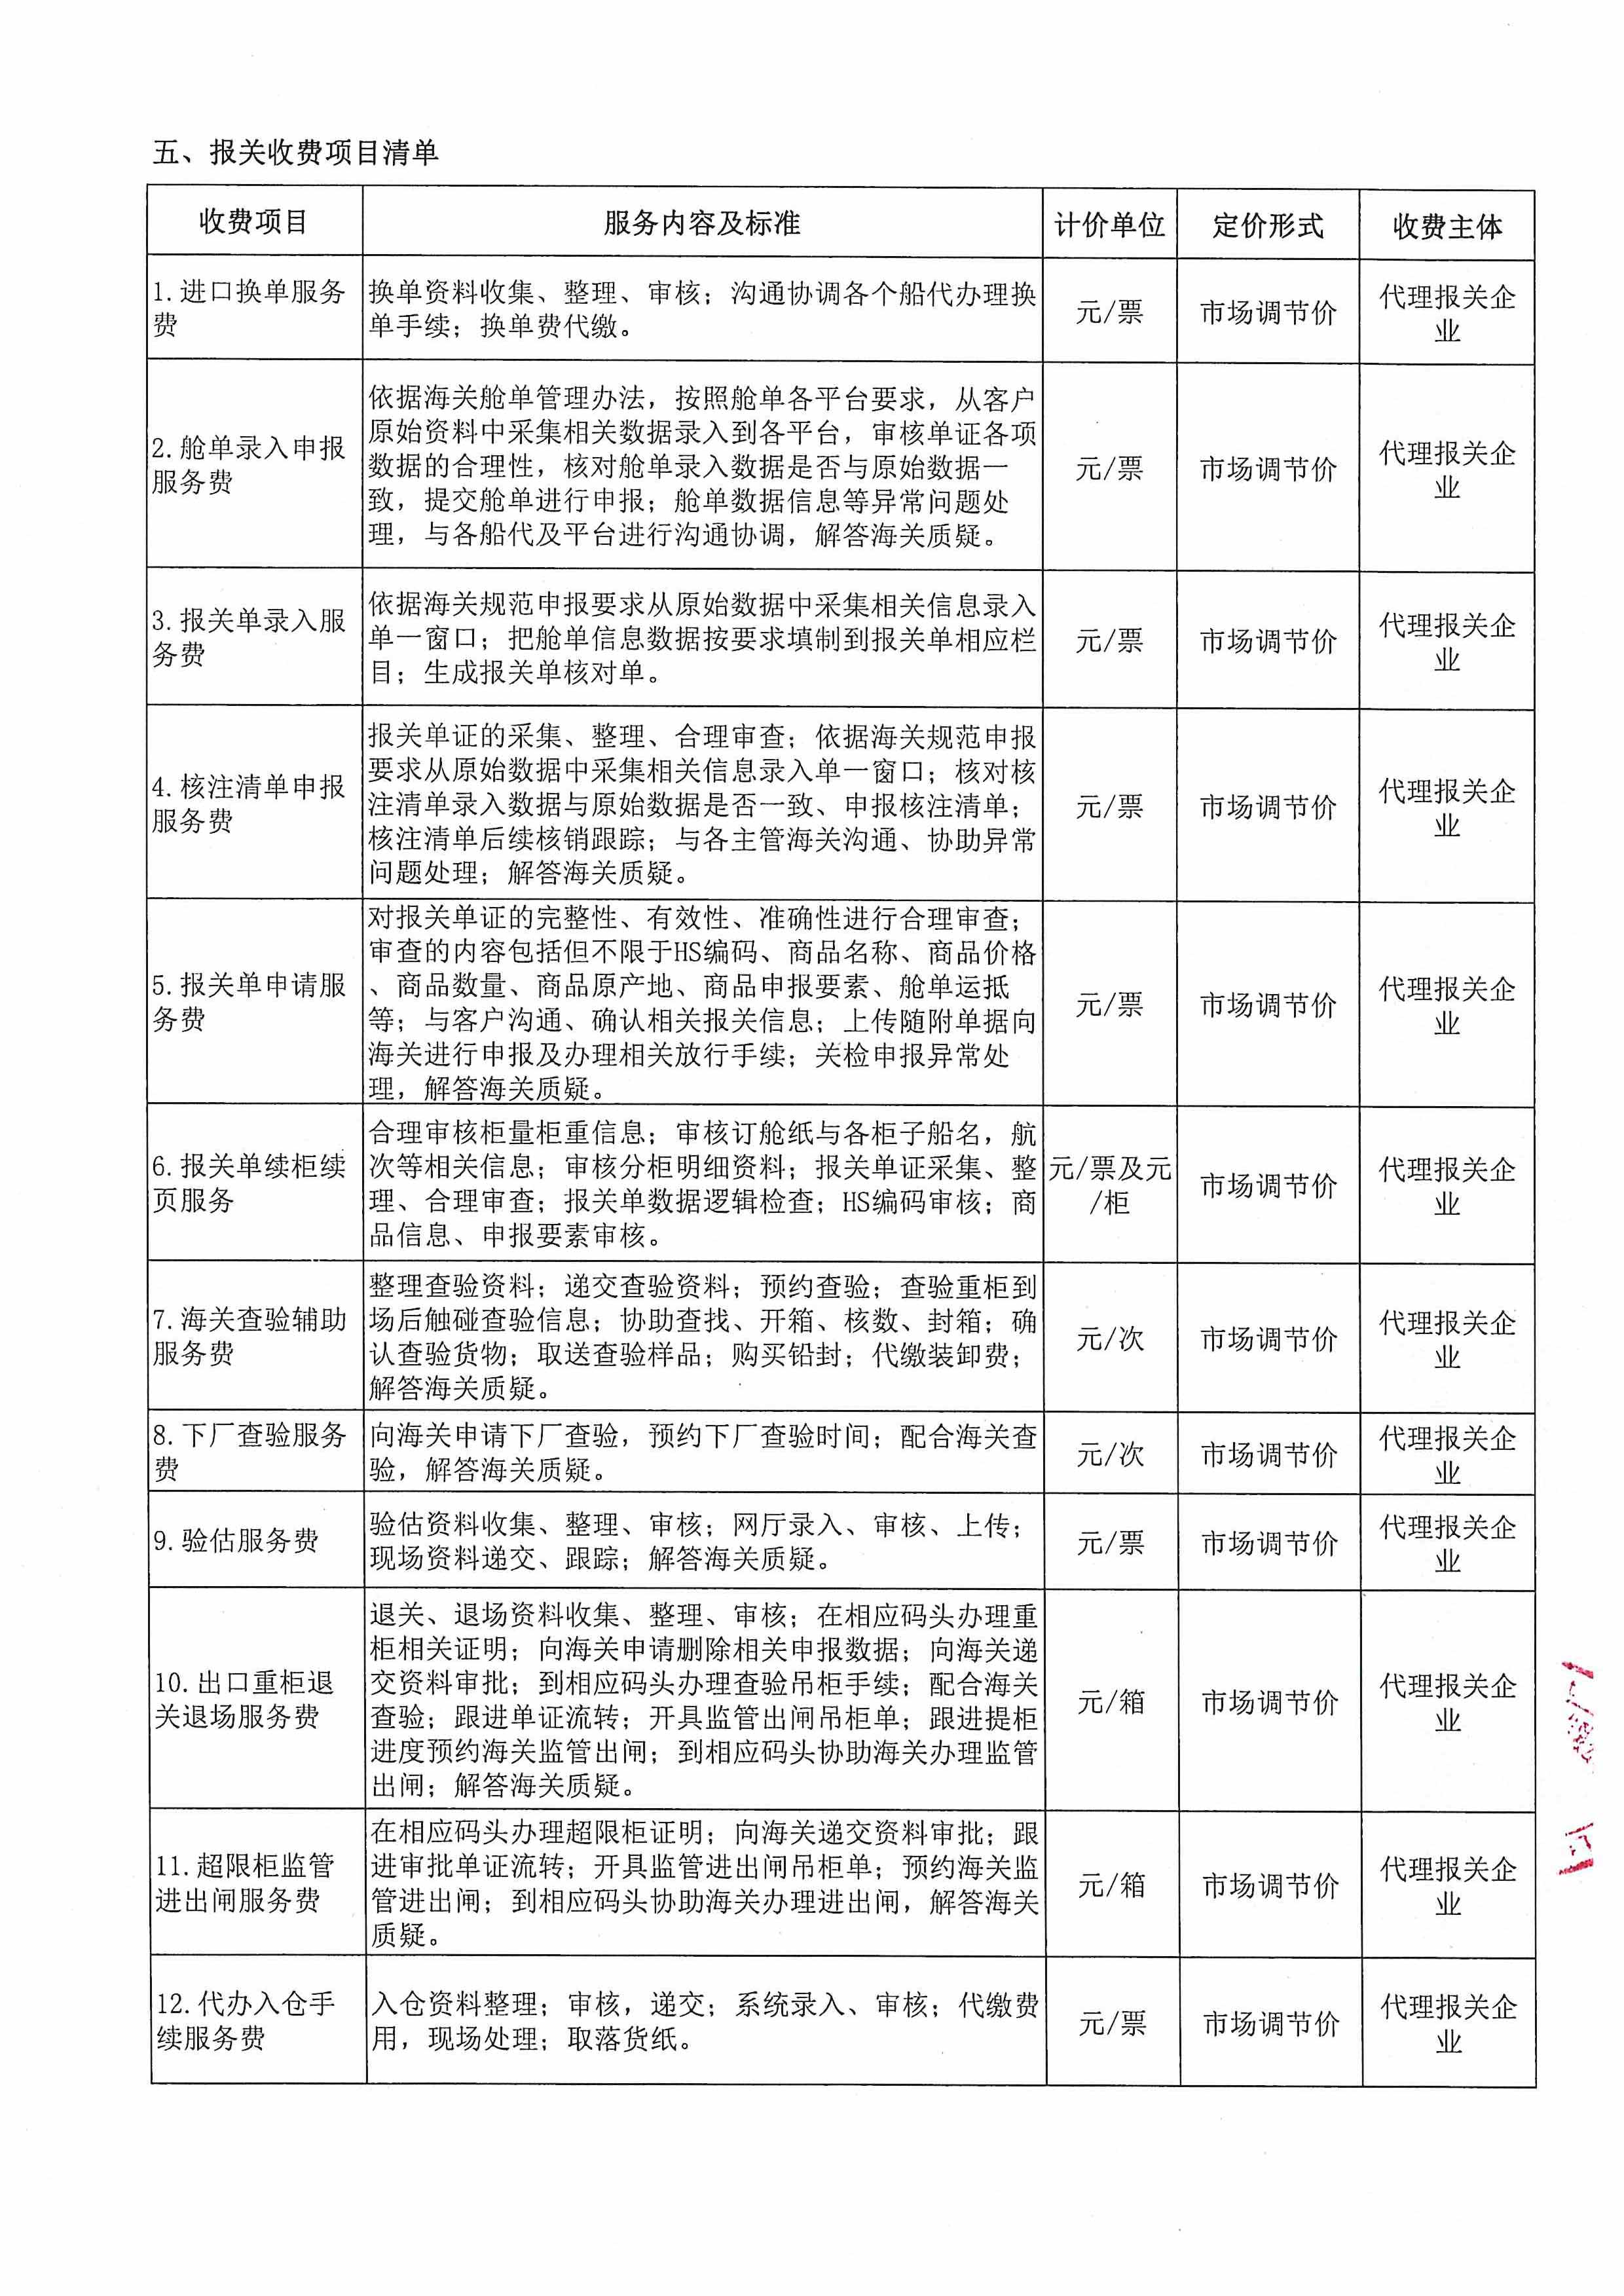 深圳亚联利成富港航服务有限公司收费目录清单_4.jpg